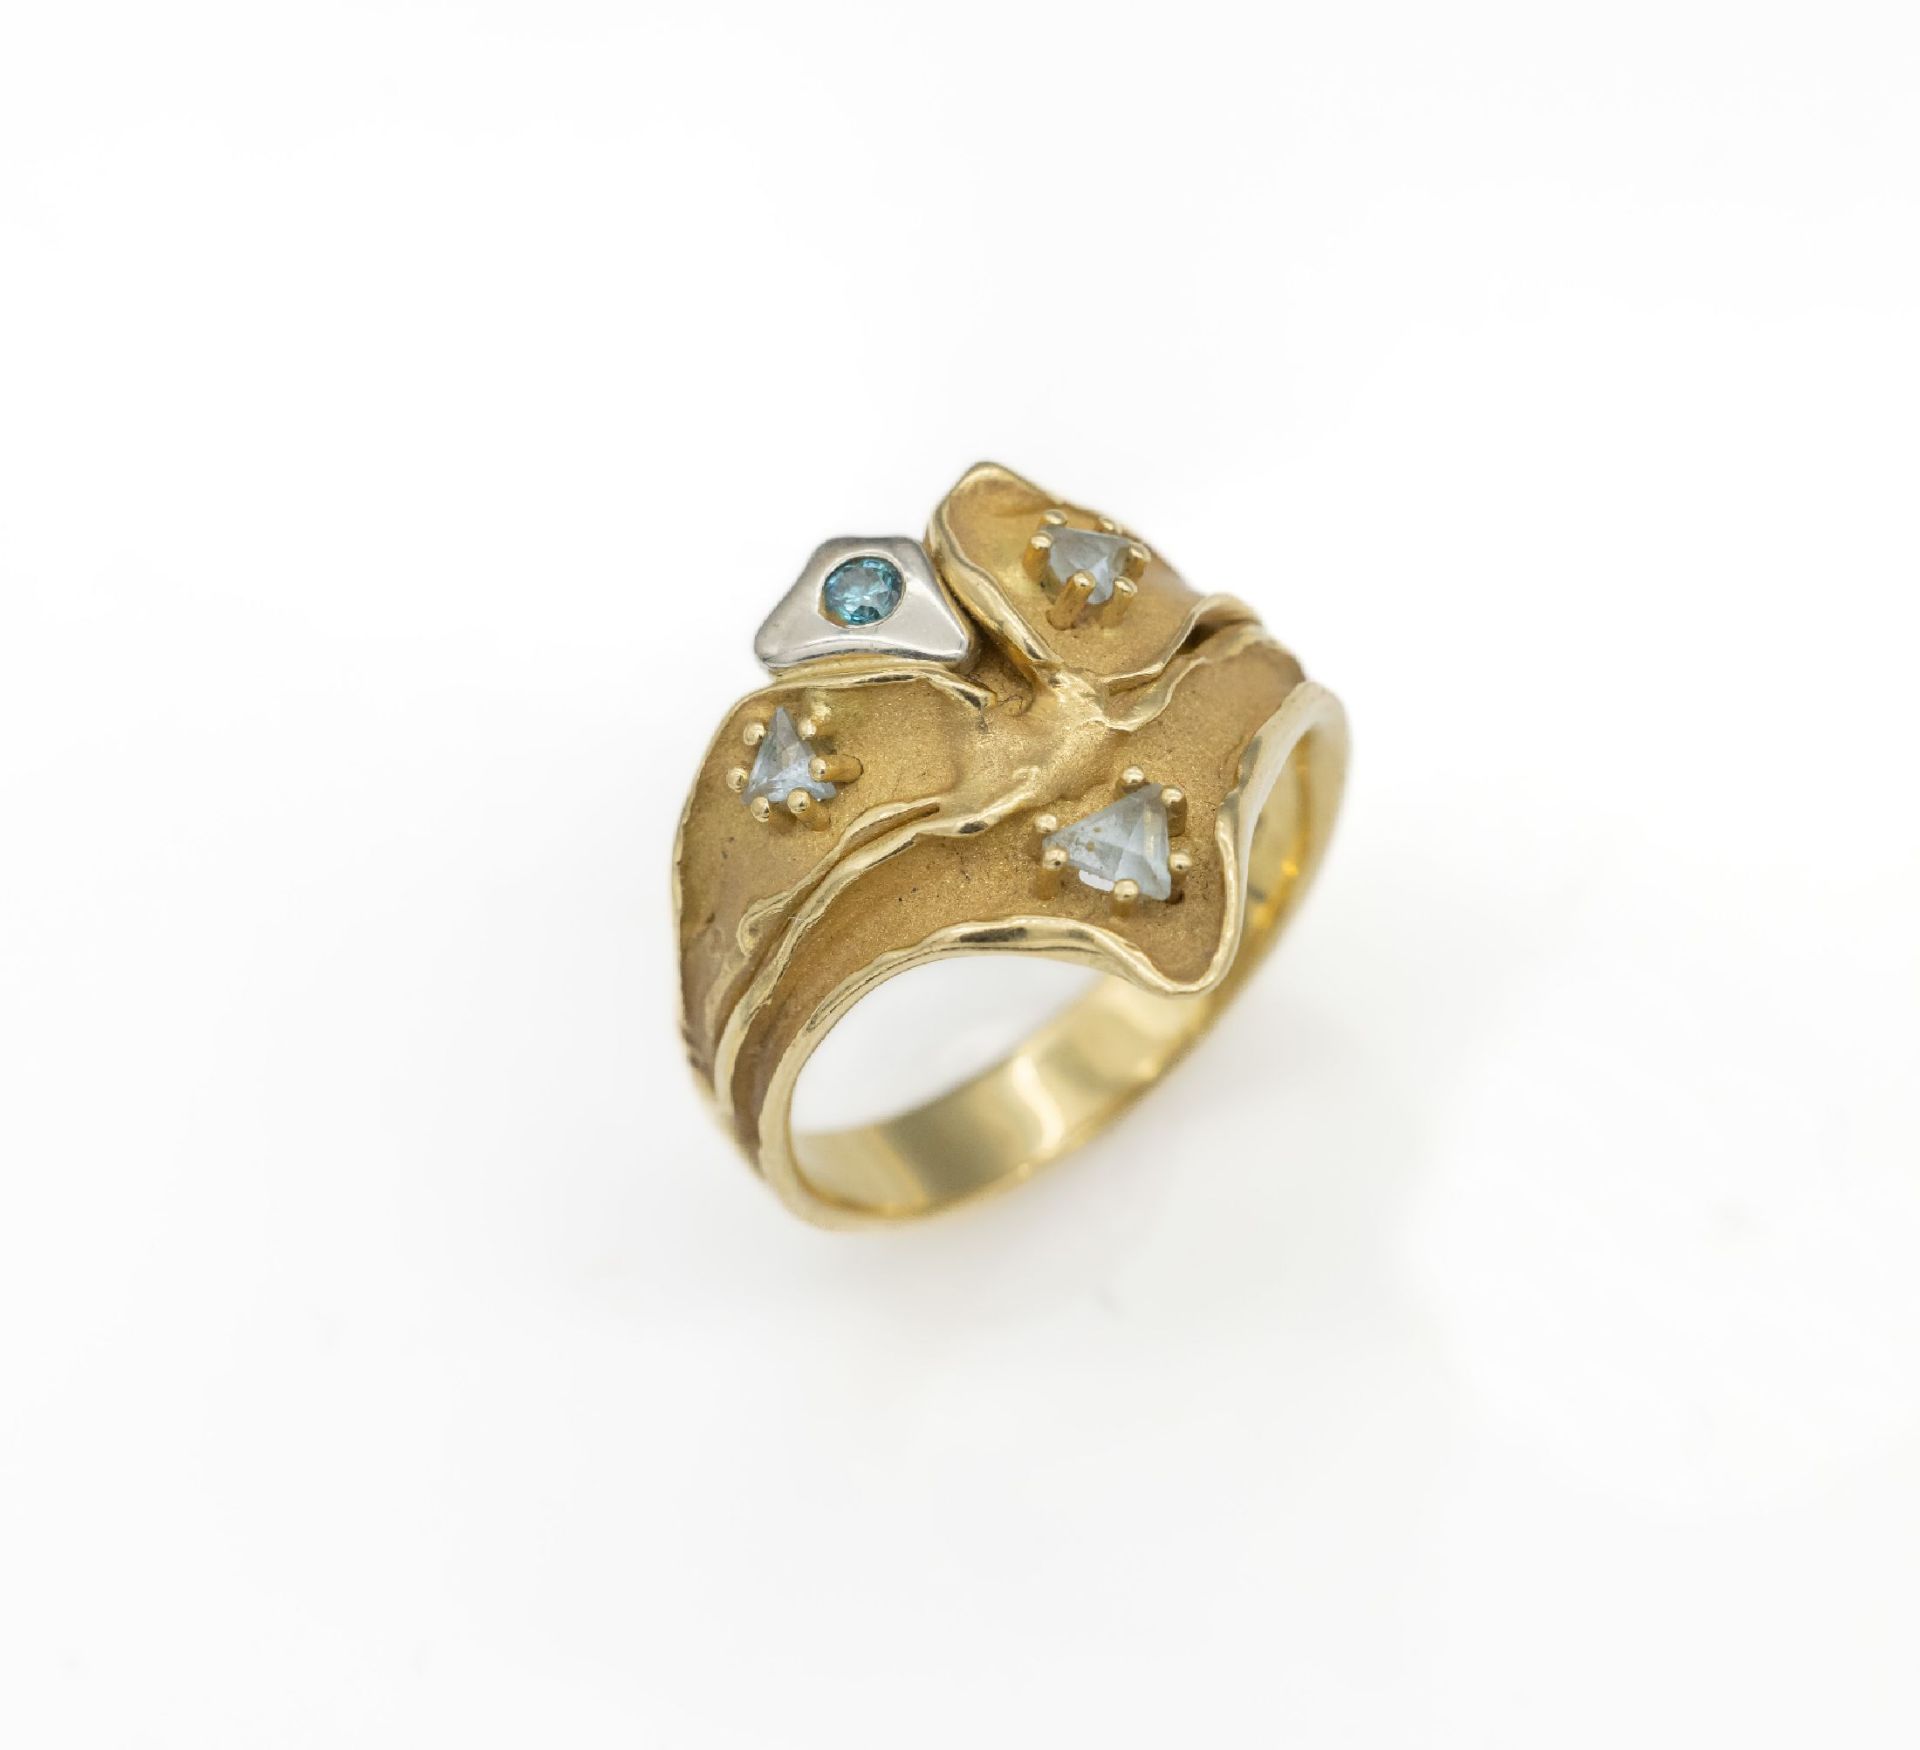 18 kt Gold Brillant-Farbstein-Ring,   GG/WG 750/000,